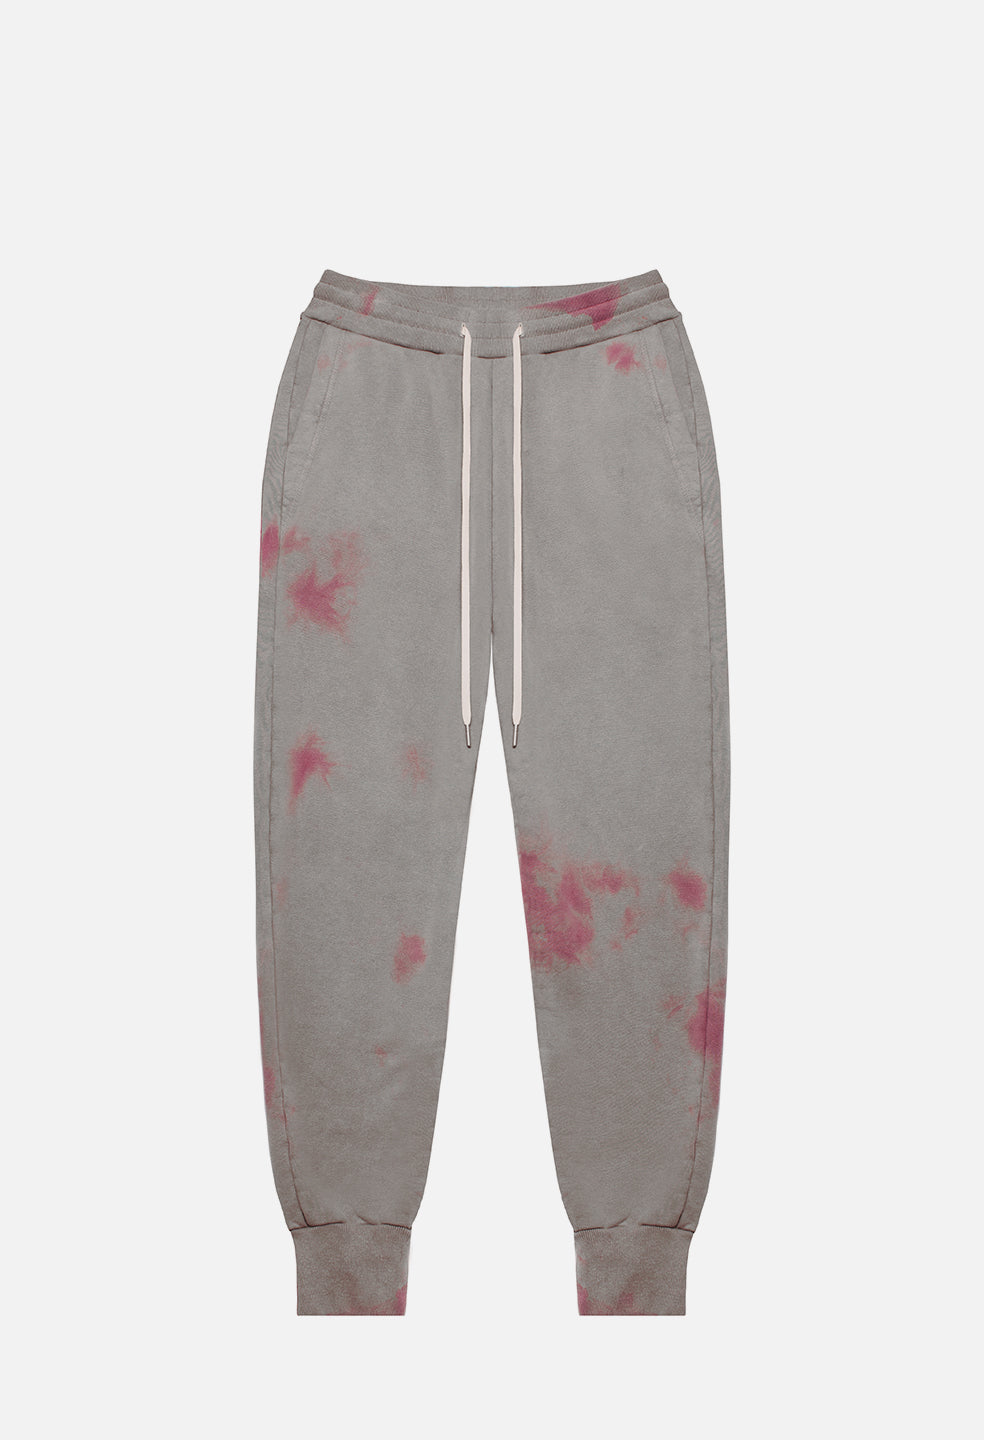 Double Dye Ebisu Sweatpants Grey X Pink